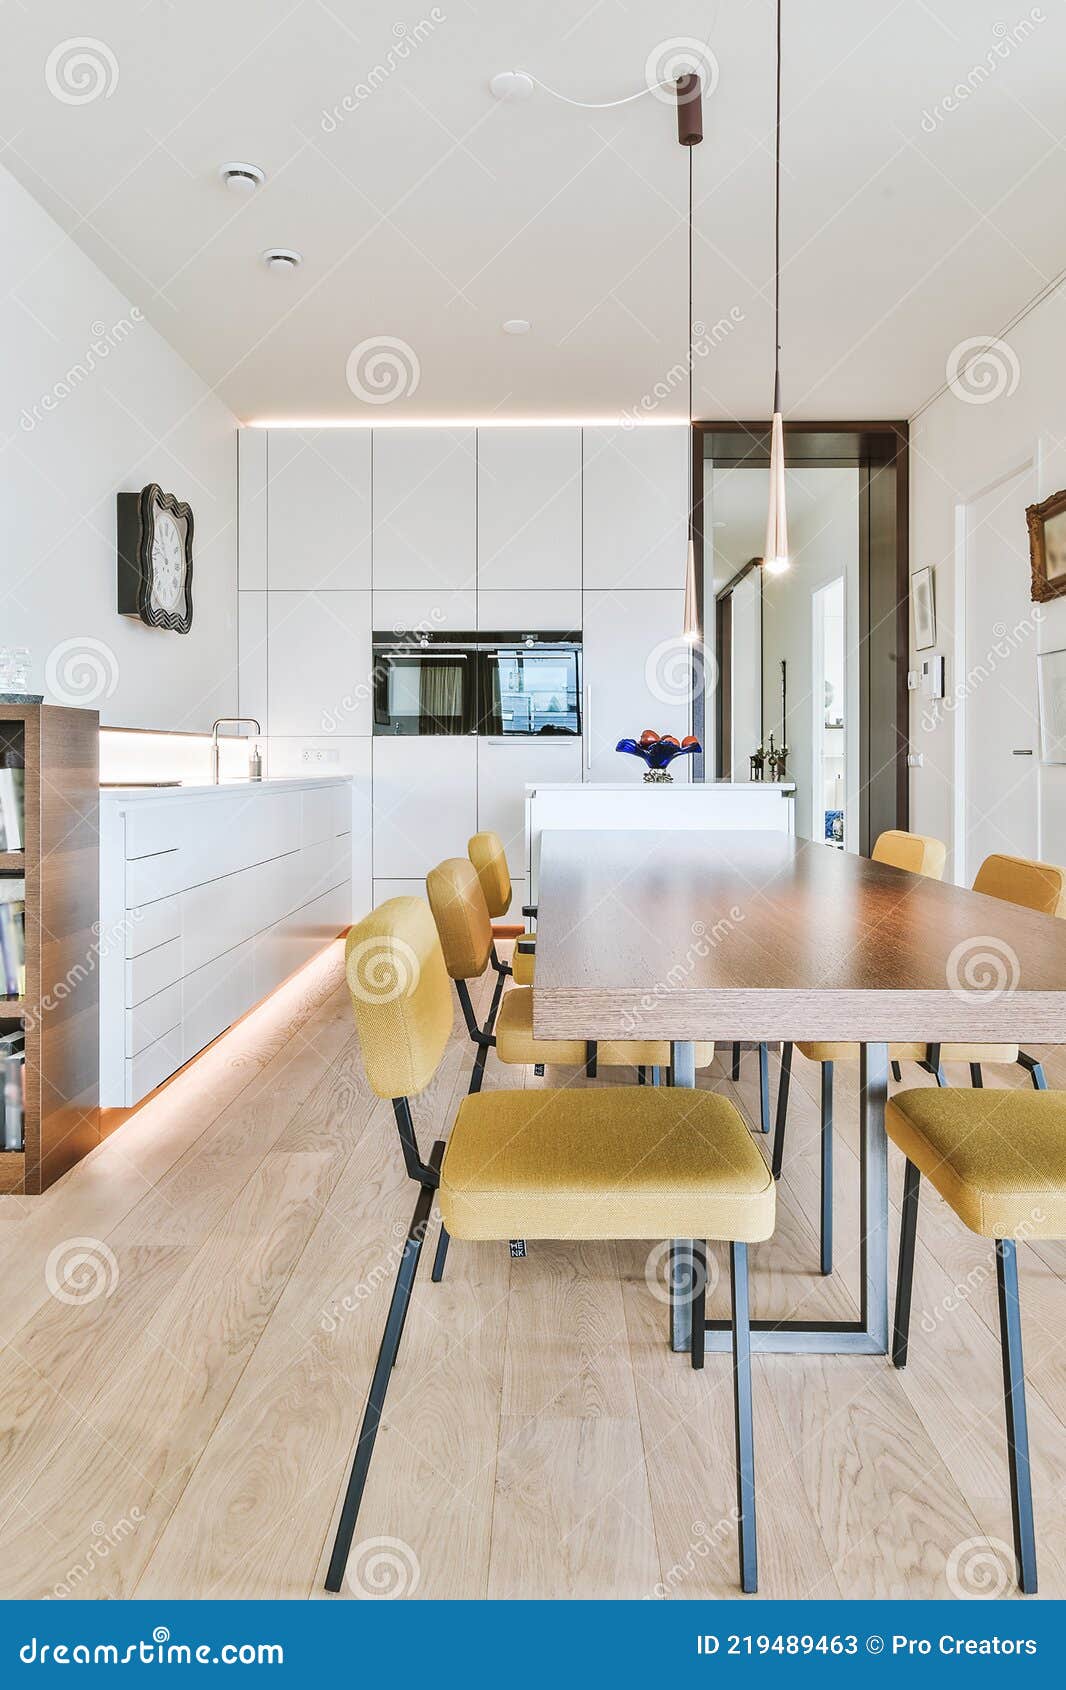 amplitude Barmhartig Scherm Modern Interieur Thuis Met Eetzone En Keuken Stock Afbeelding - Image of  huisvesting, landgoed: 219489463